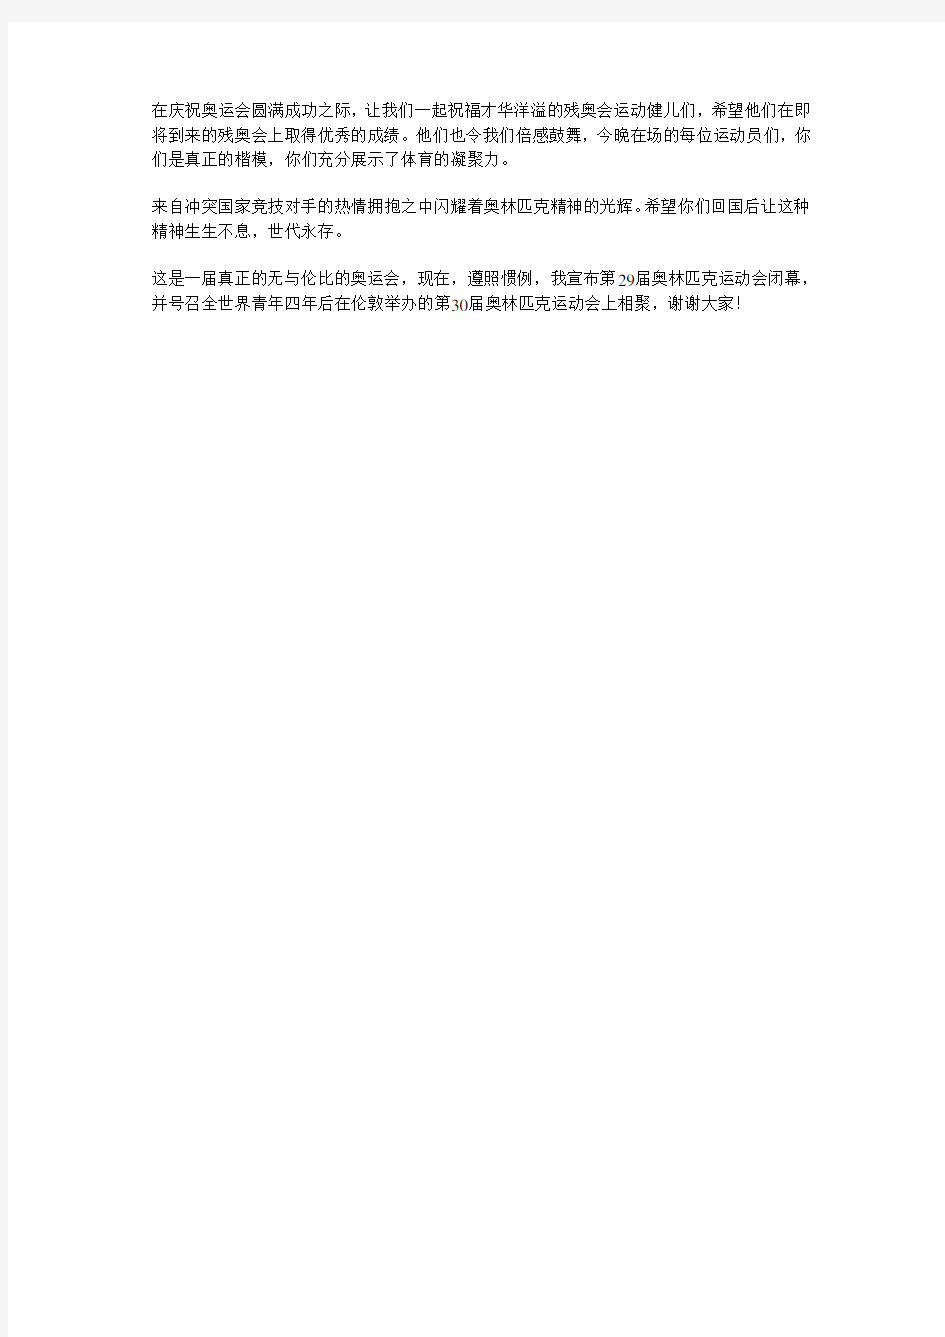 国际奥委会主席罗格在北京奥运会闭幕式上的致辞